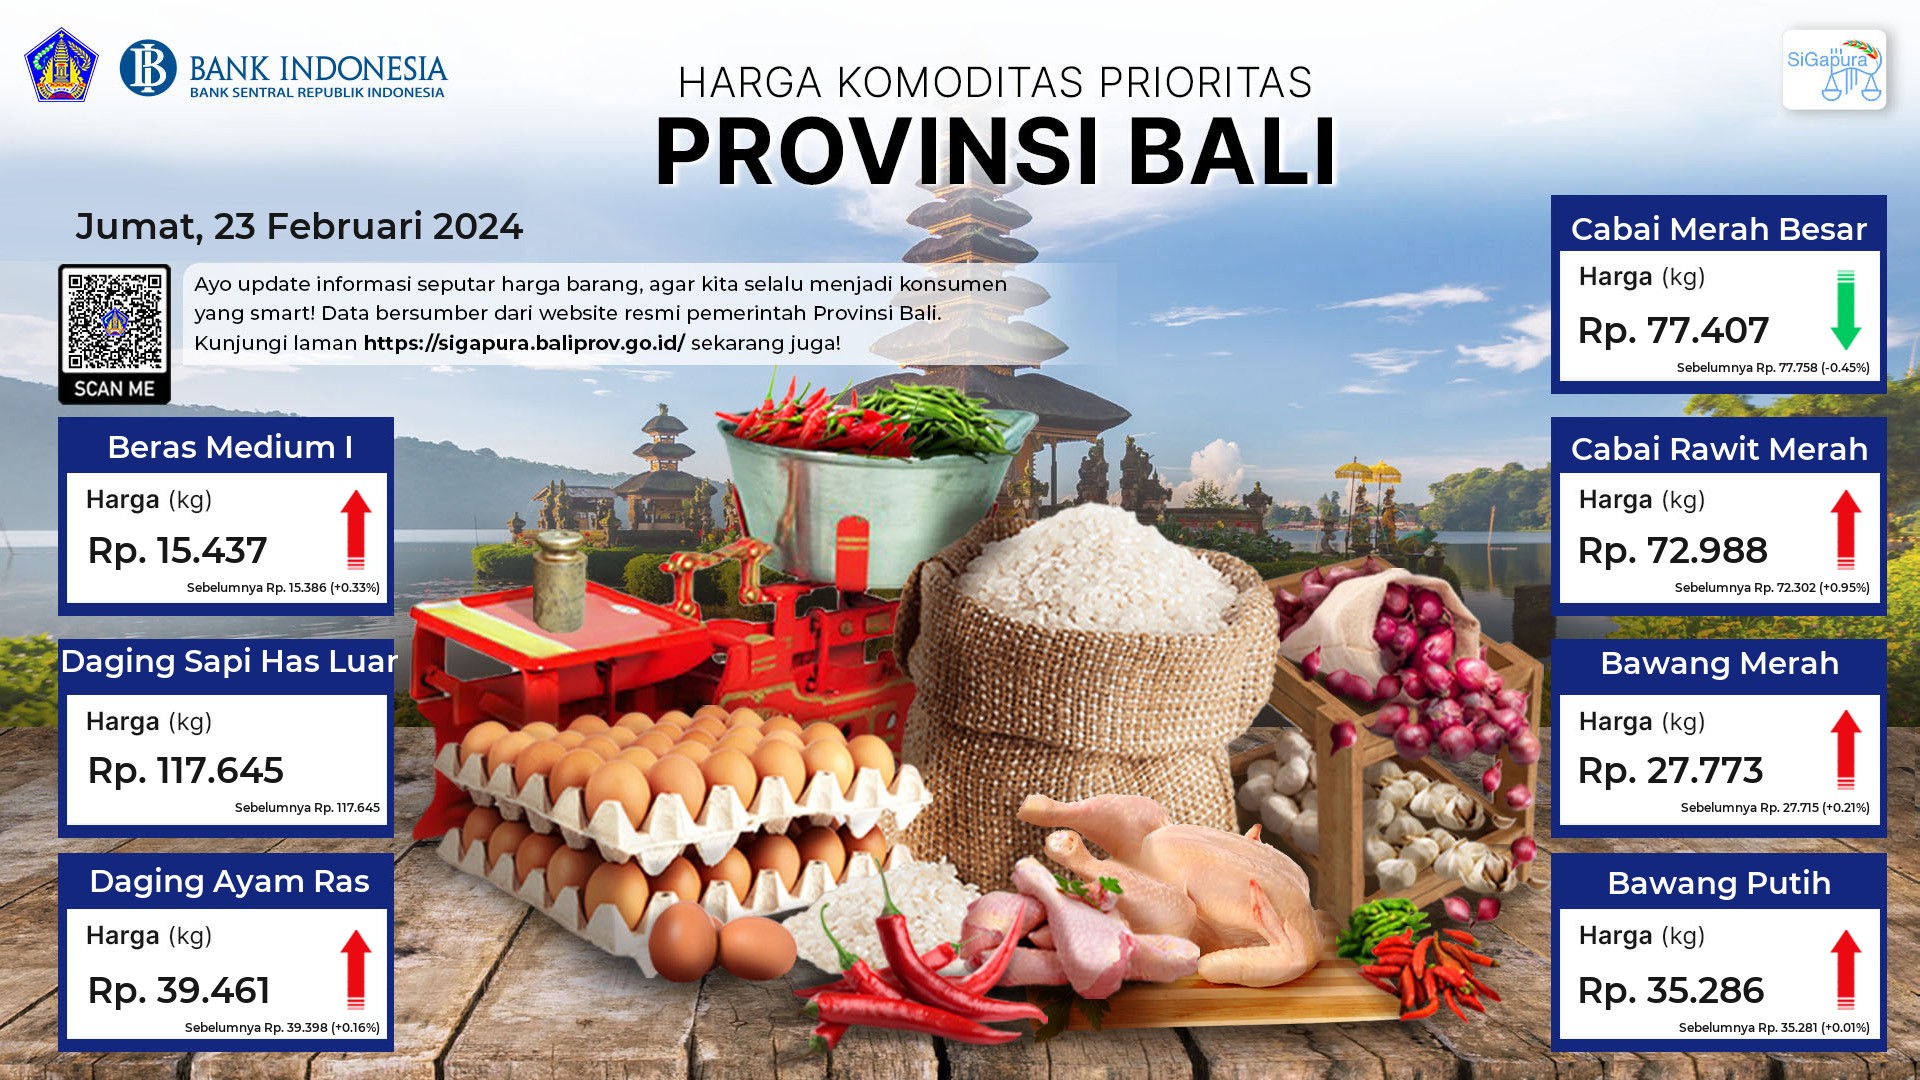 Pantauan Harga untuk 7 Komoditas Prioritas di Provinsi Bali Tanggal 23 Februari 2024